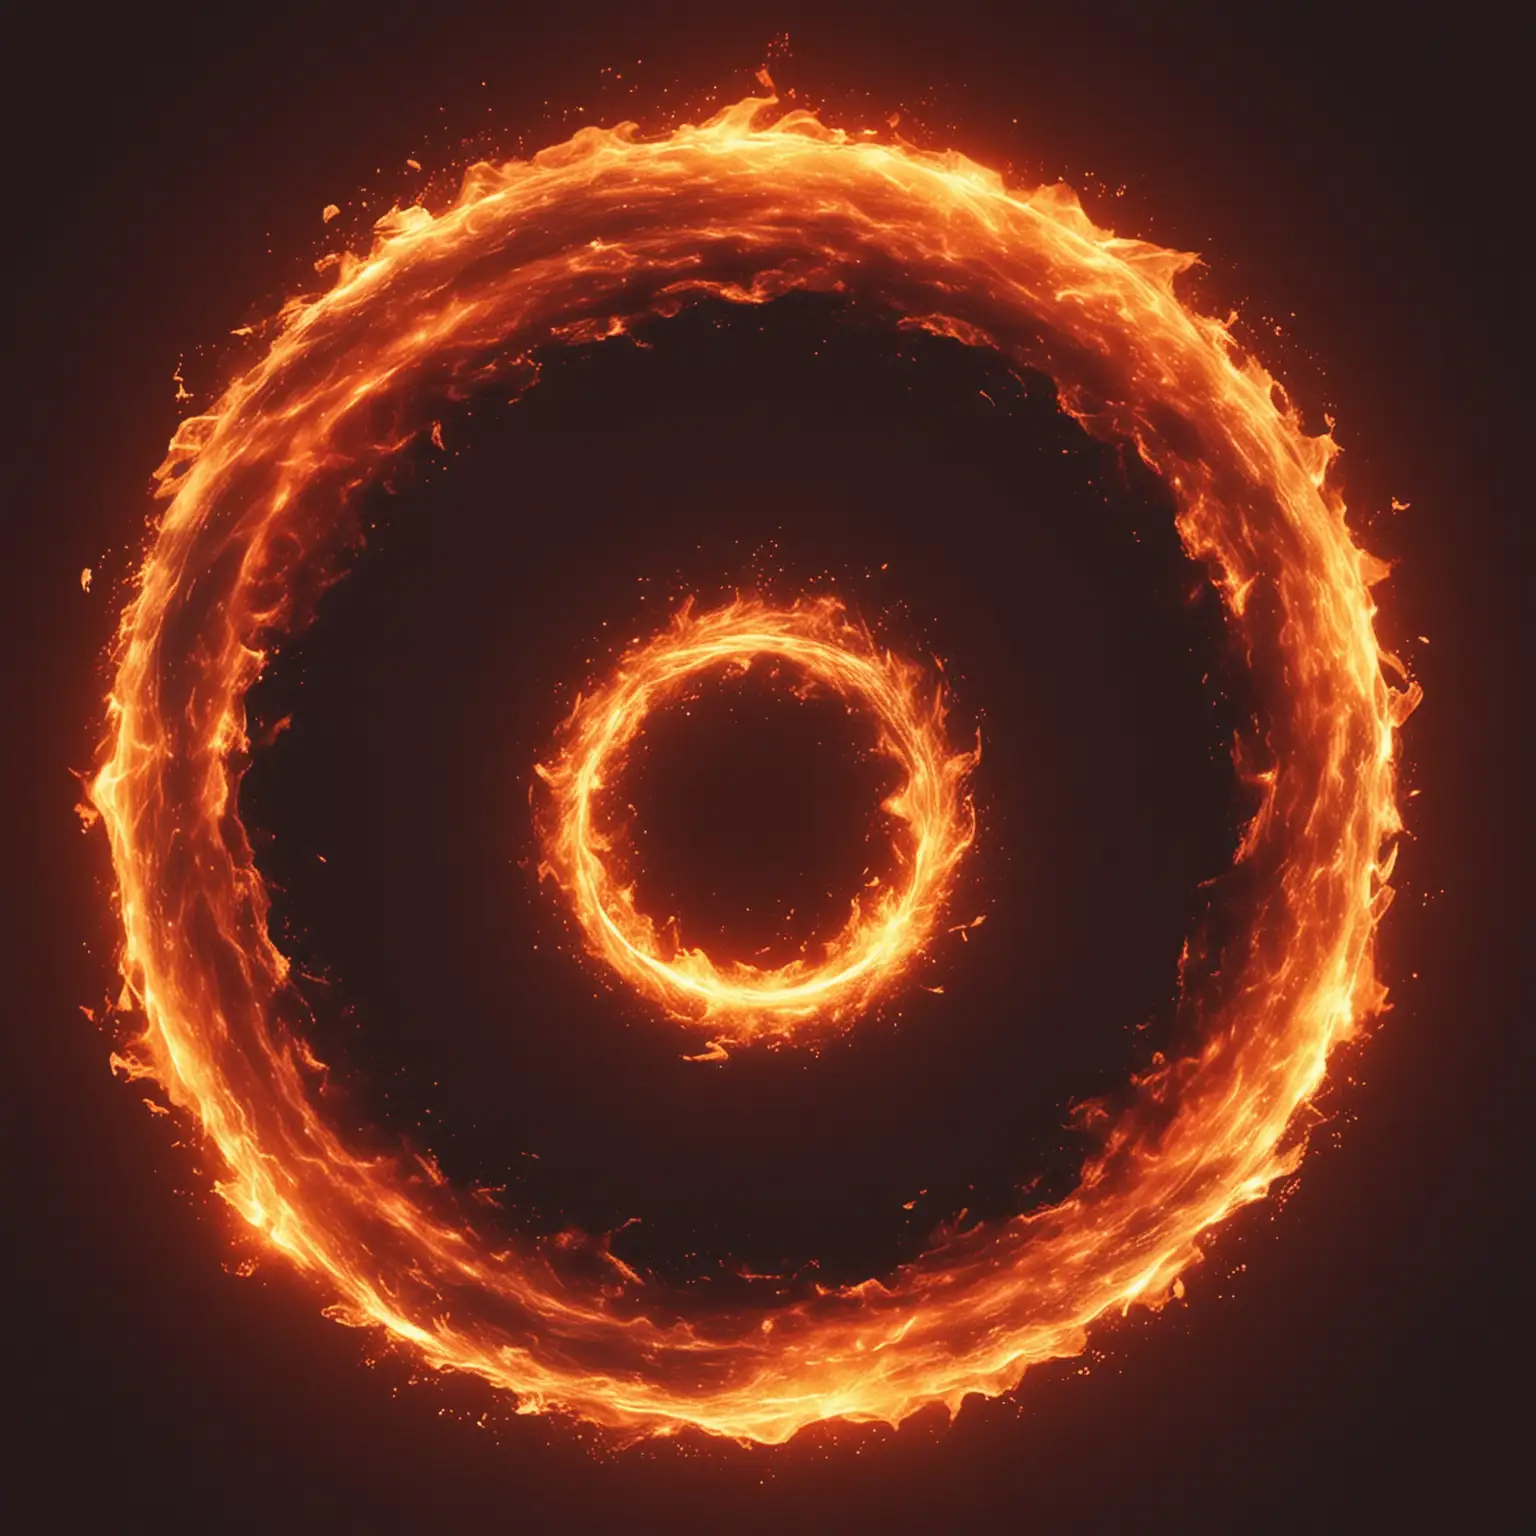 Genera la portada de single de musica electronica titulado 'Fire' como un circulo de fuego

